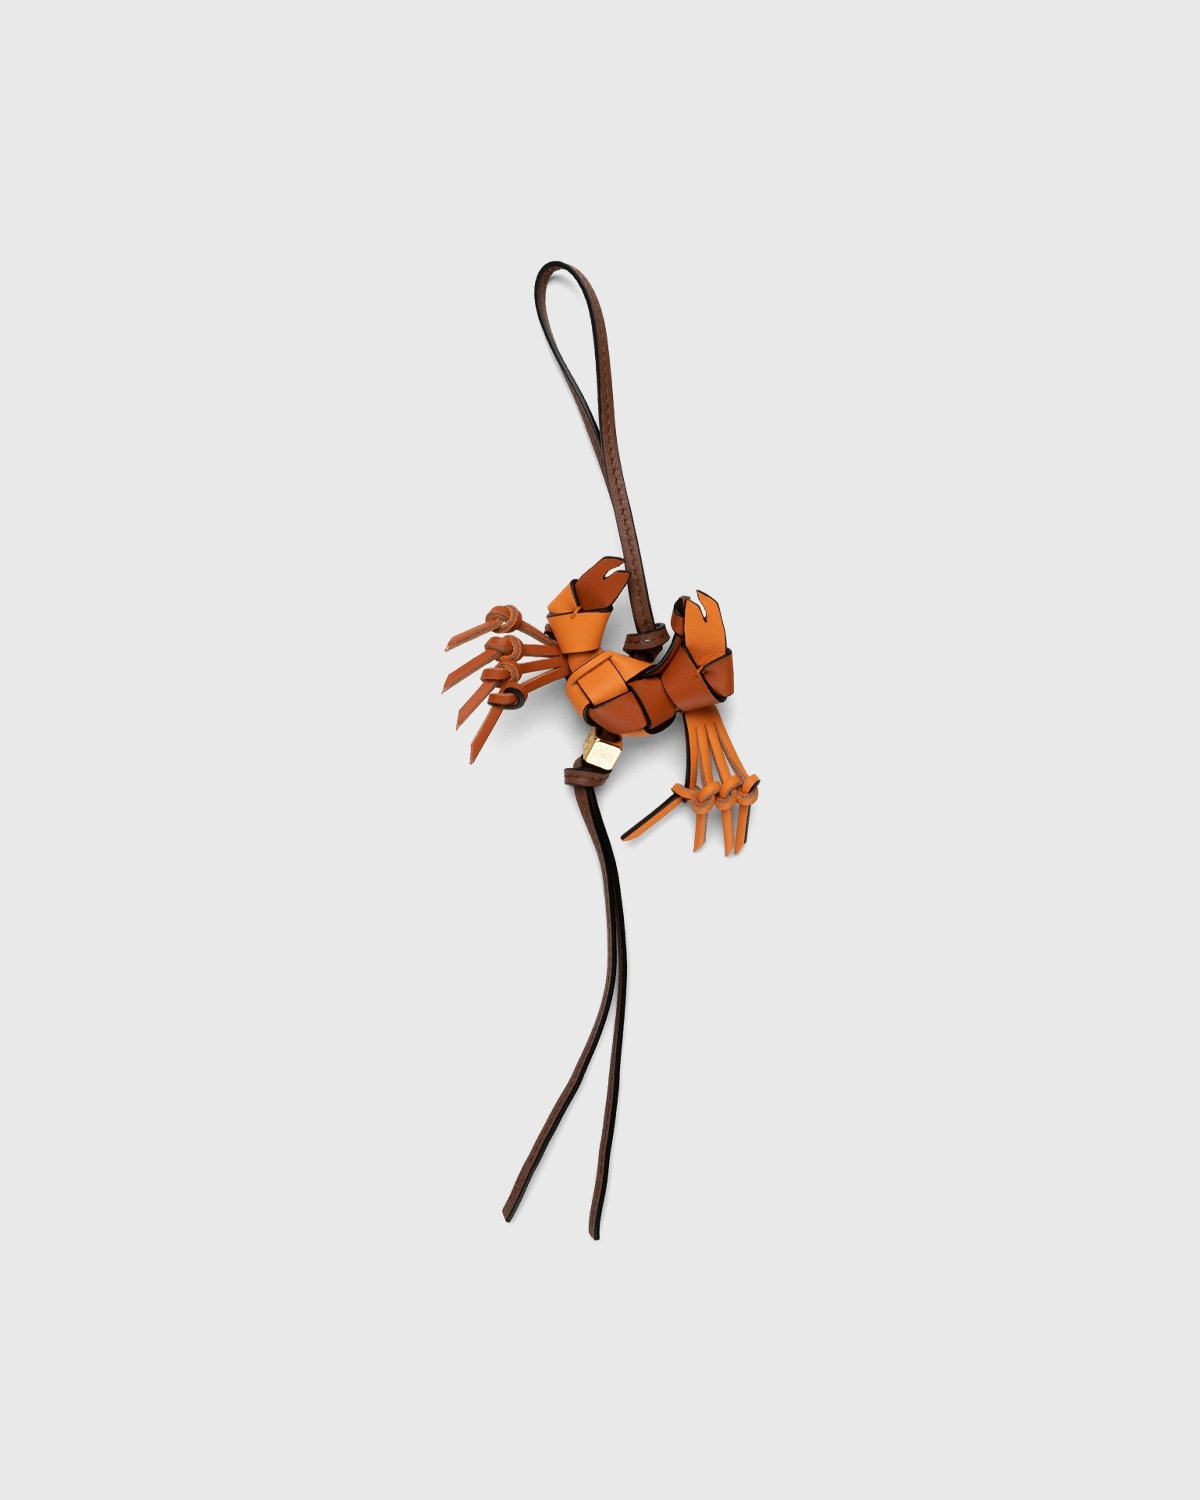 Loewe – Paula's Ibiza Crab Charm Orange - Keychains - Orange - Image 2